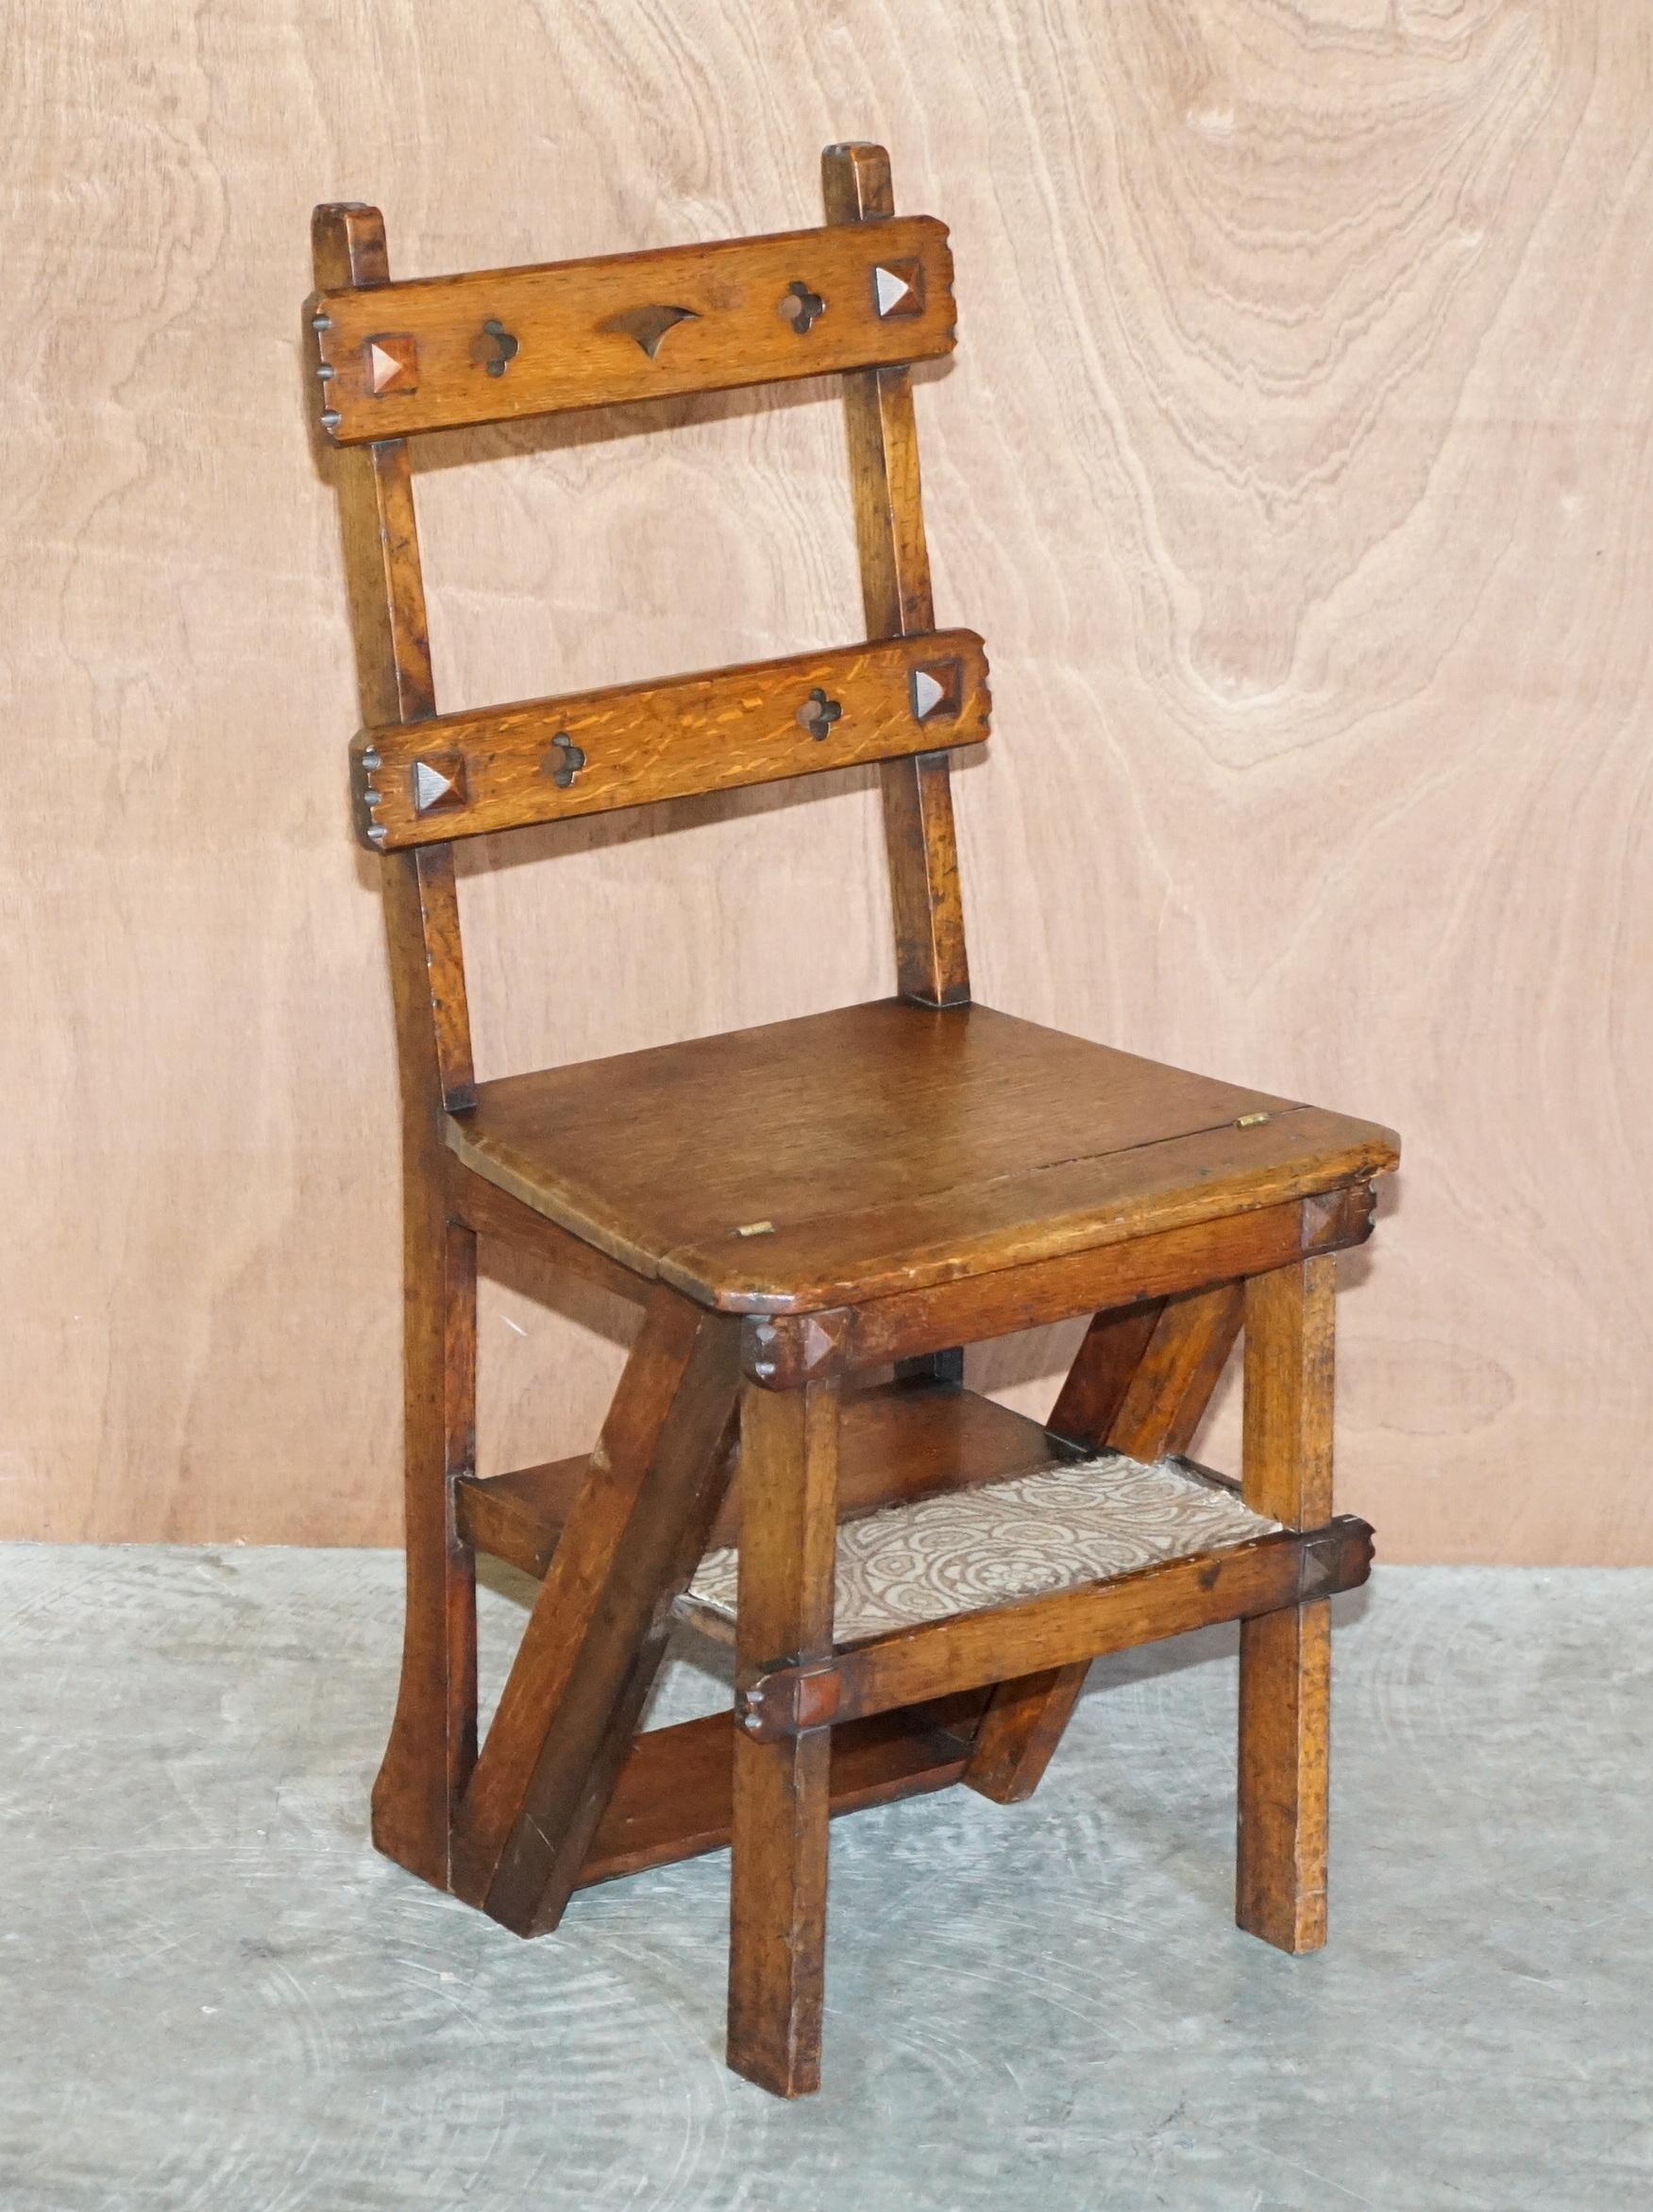 Wir freuen uns, diese schöne antike Arts & Crafts viktorianischen metamorphic Bibliothek Schritte Stuhl in Eiche mit William Morris Teppich Schritte zum Verkauf anbieten 

Ein sehr charmantes Stück mit hohem Sammlerwert, das als Bibliothekstreppe